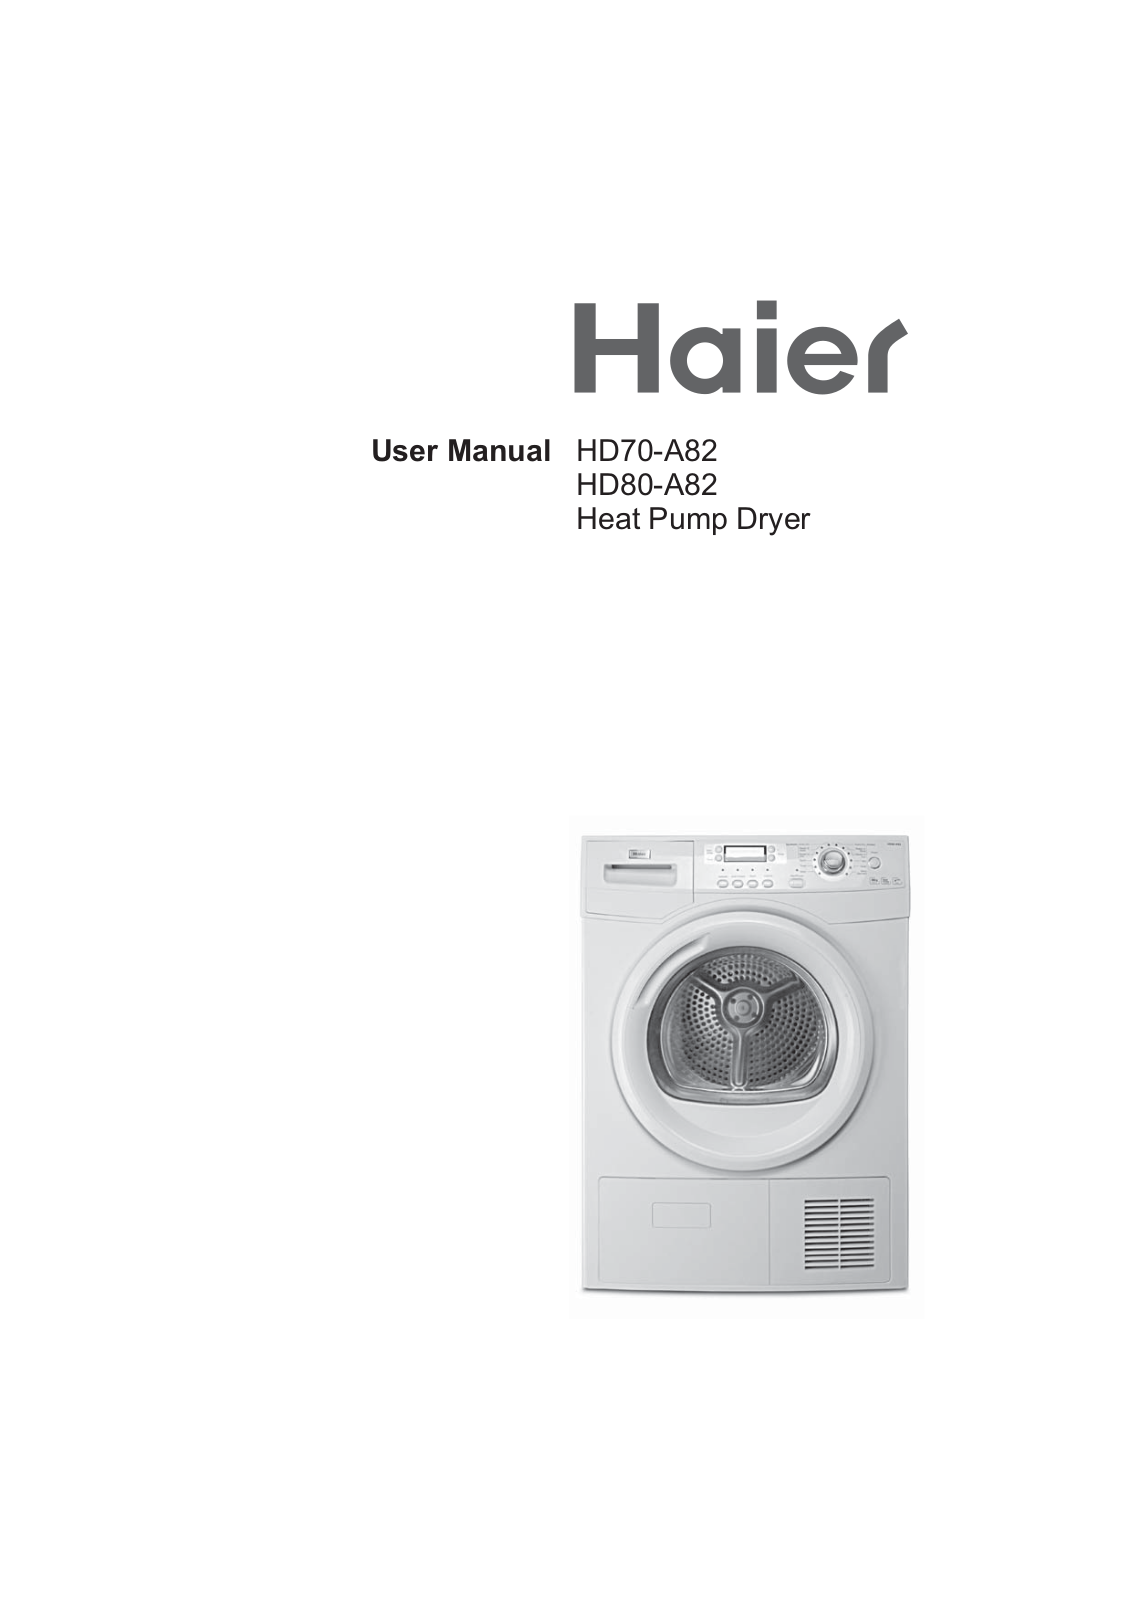 HAIER HD70-A82 User Manual